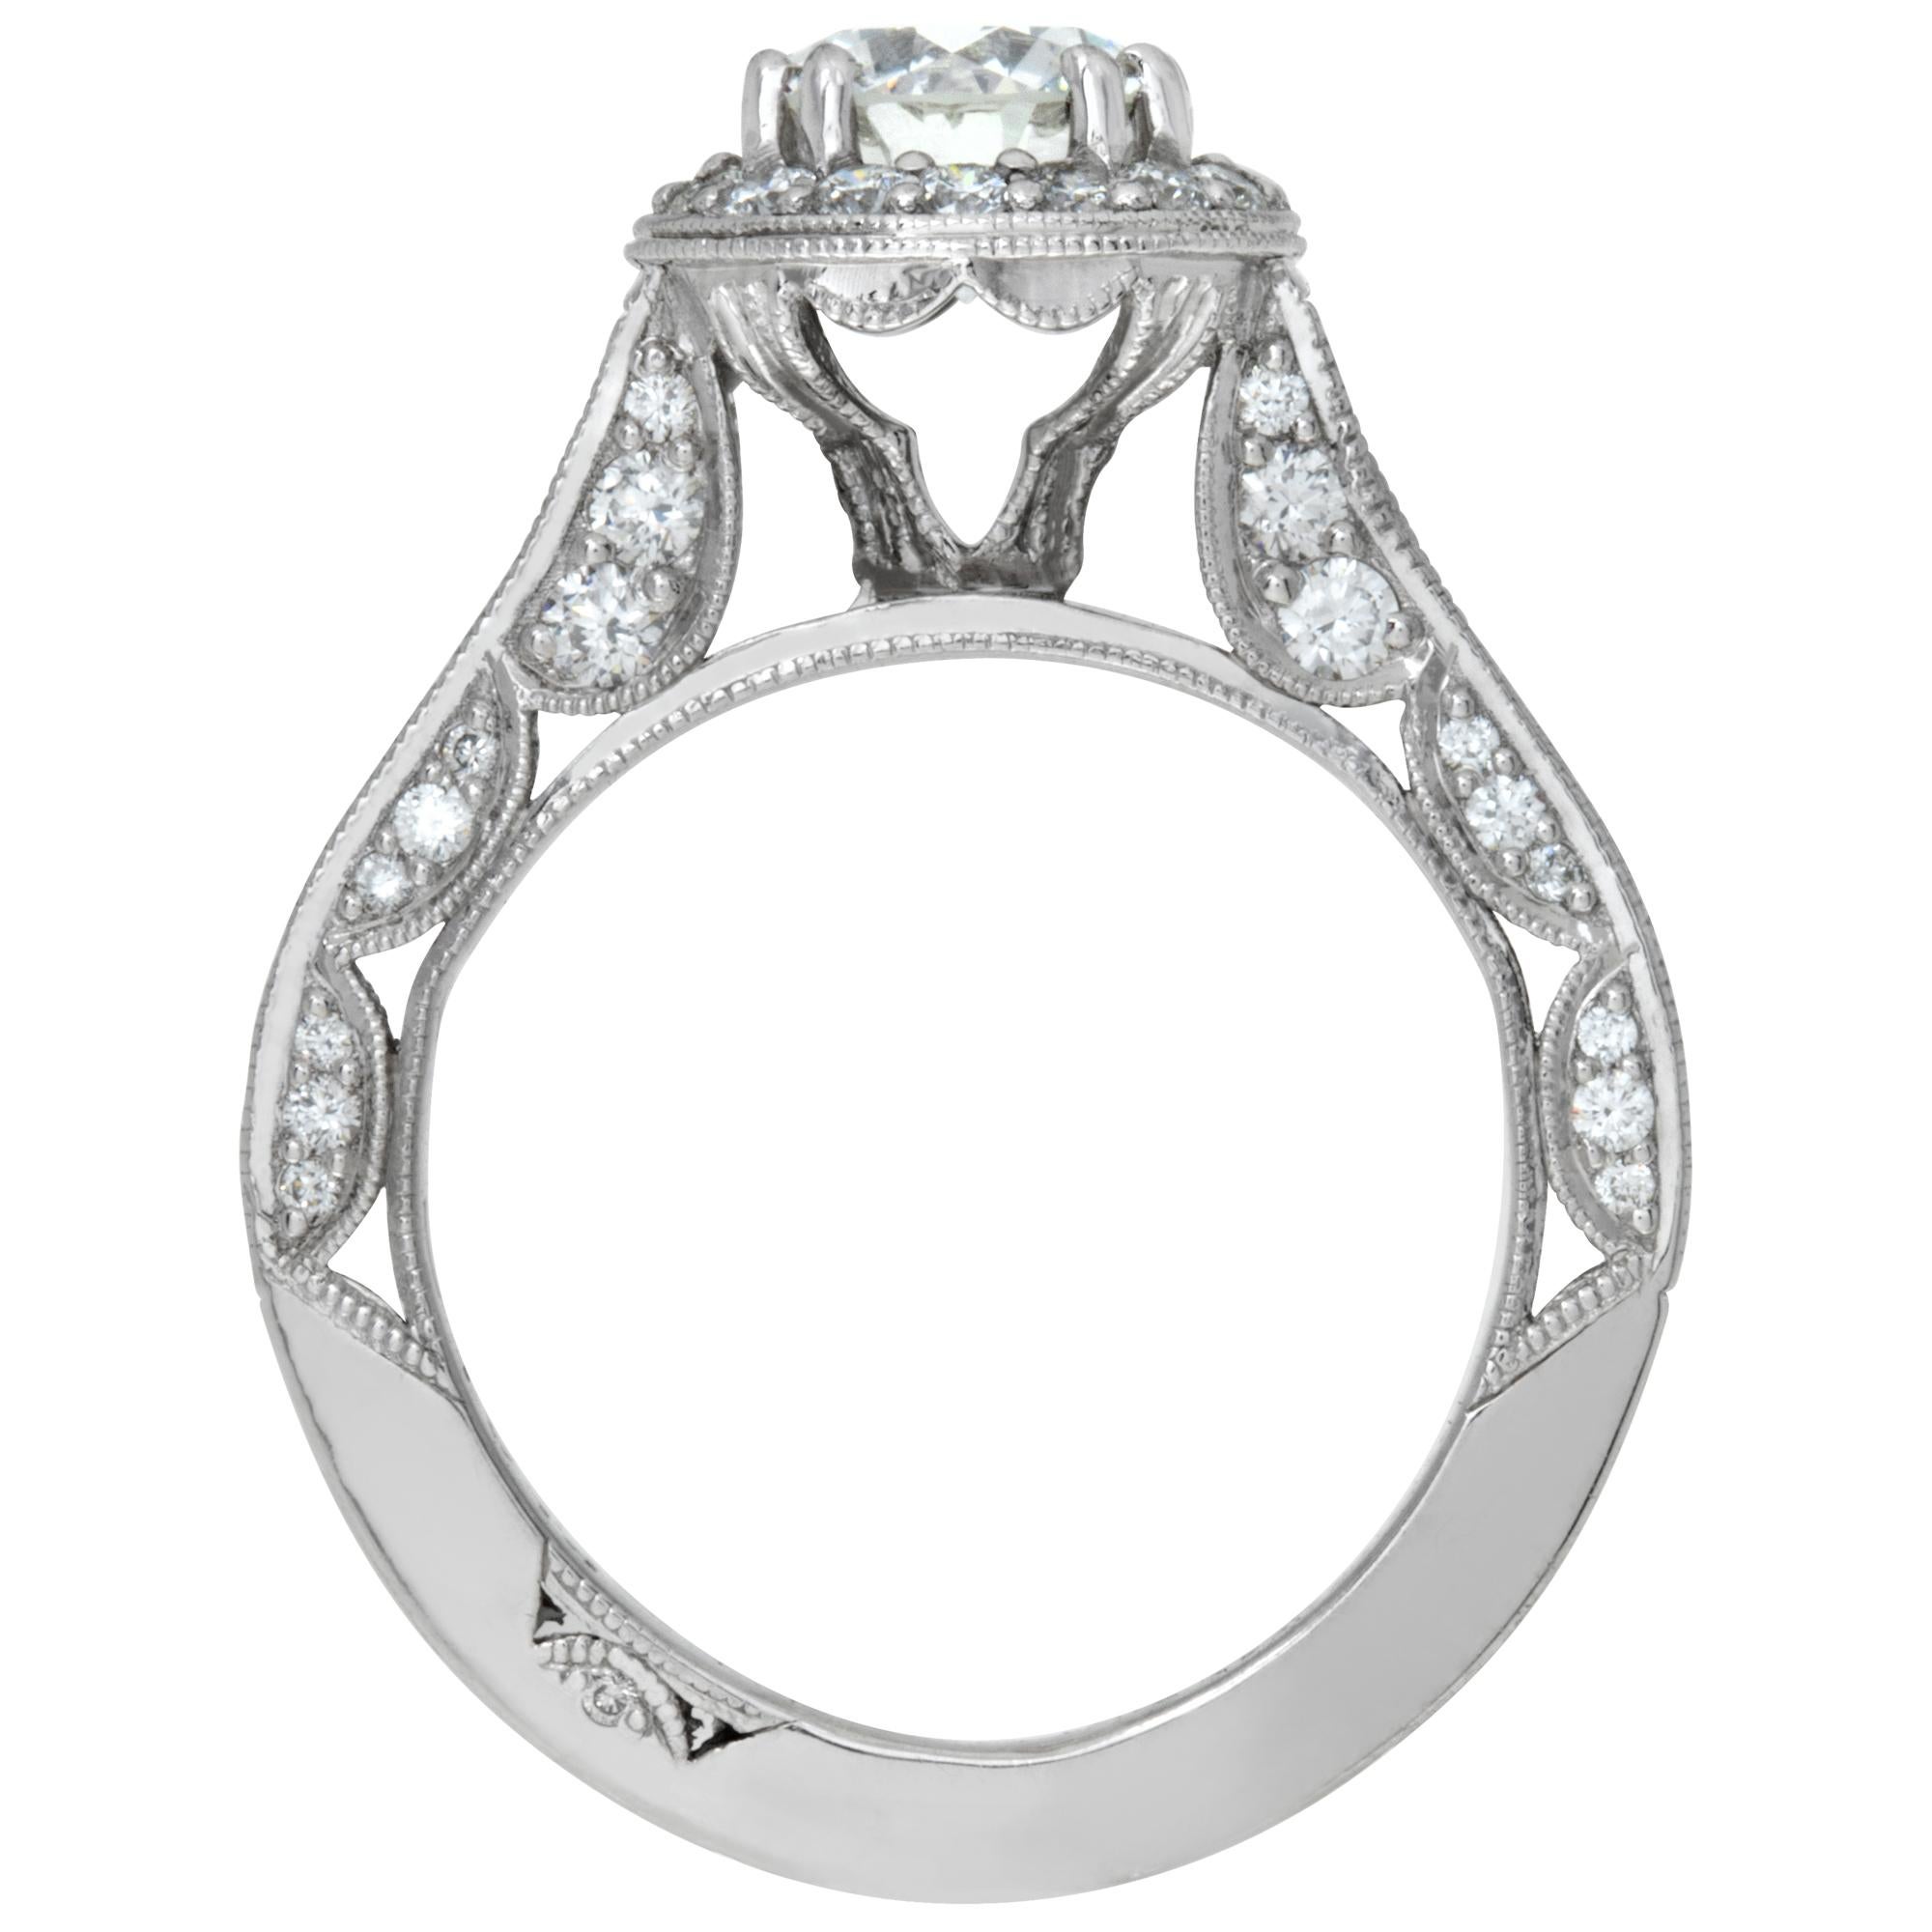 Women's GIA certified round brilliant cut diamond 1.02 carat ring set in Tacori platinum For Sale